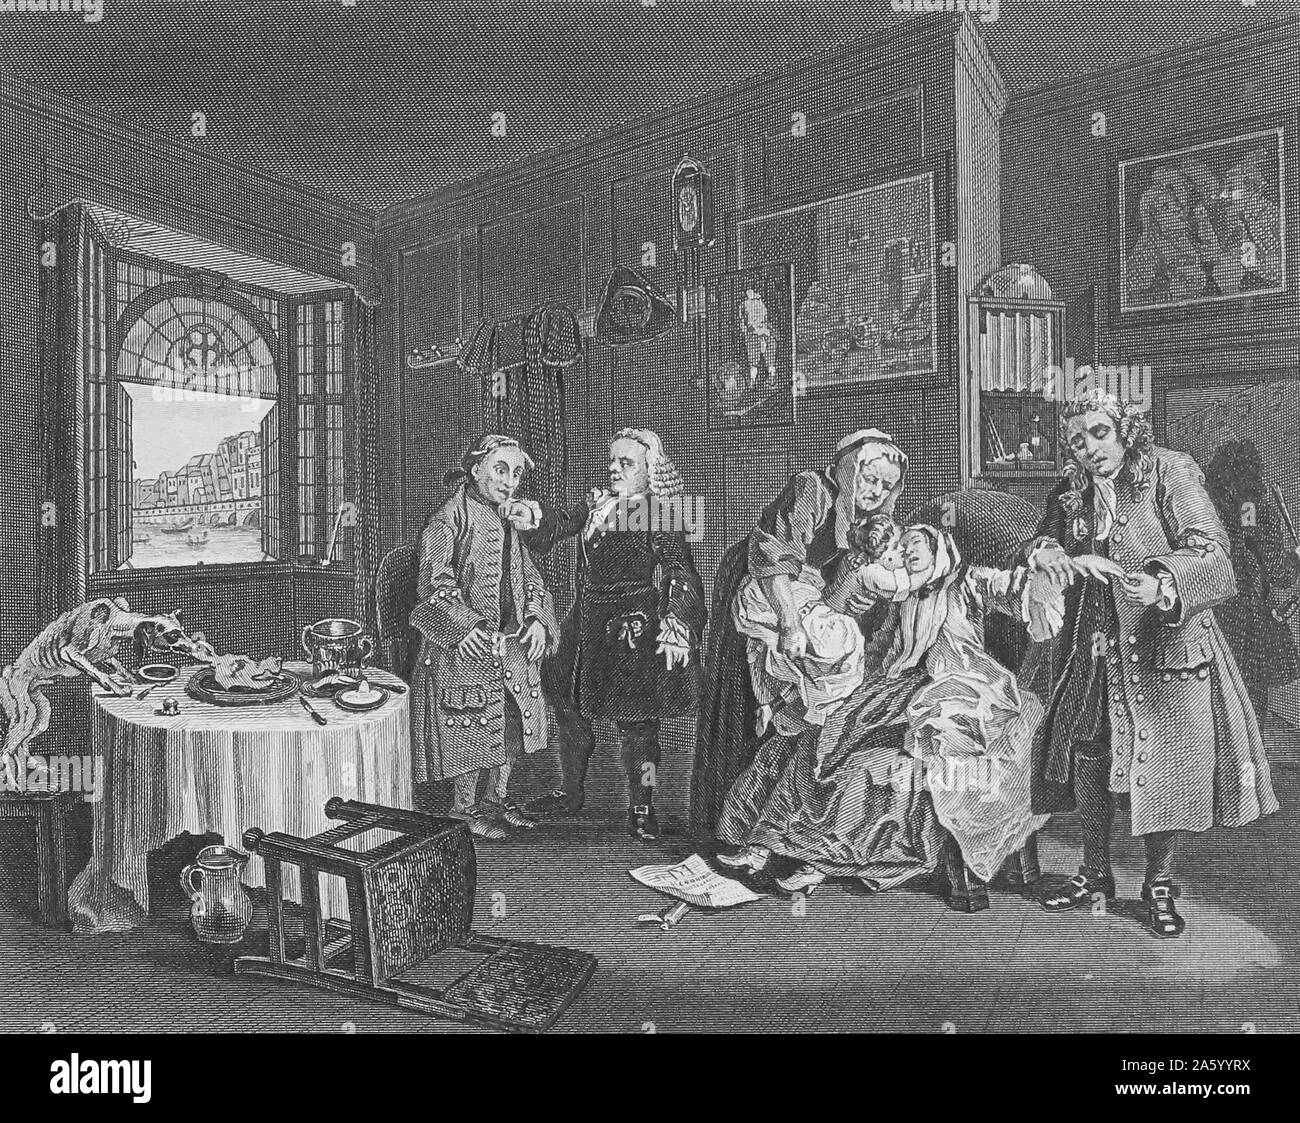 Incisione intitolata 'Matrimonio A la Mode" da William Hogarth (1697-1764) pittore inglese, printmaker, pittoriche satiro, critico sociale e fumettista editoriale che è stato accreditato con pionieristico di western arte sequenziale. Datata xviii secolo. Foto Stock